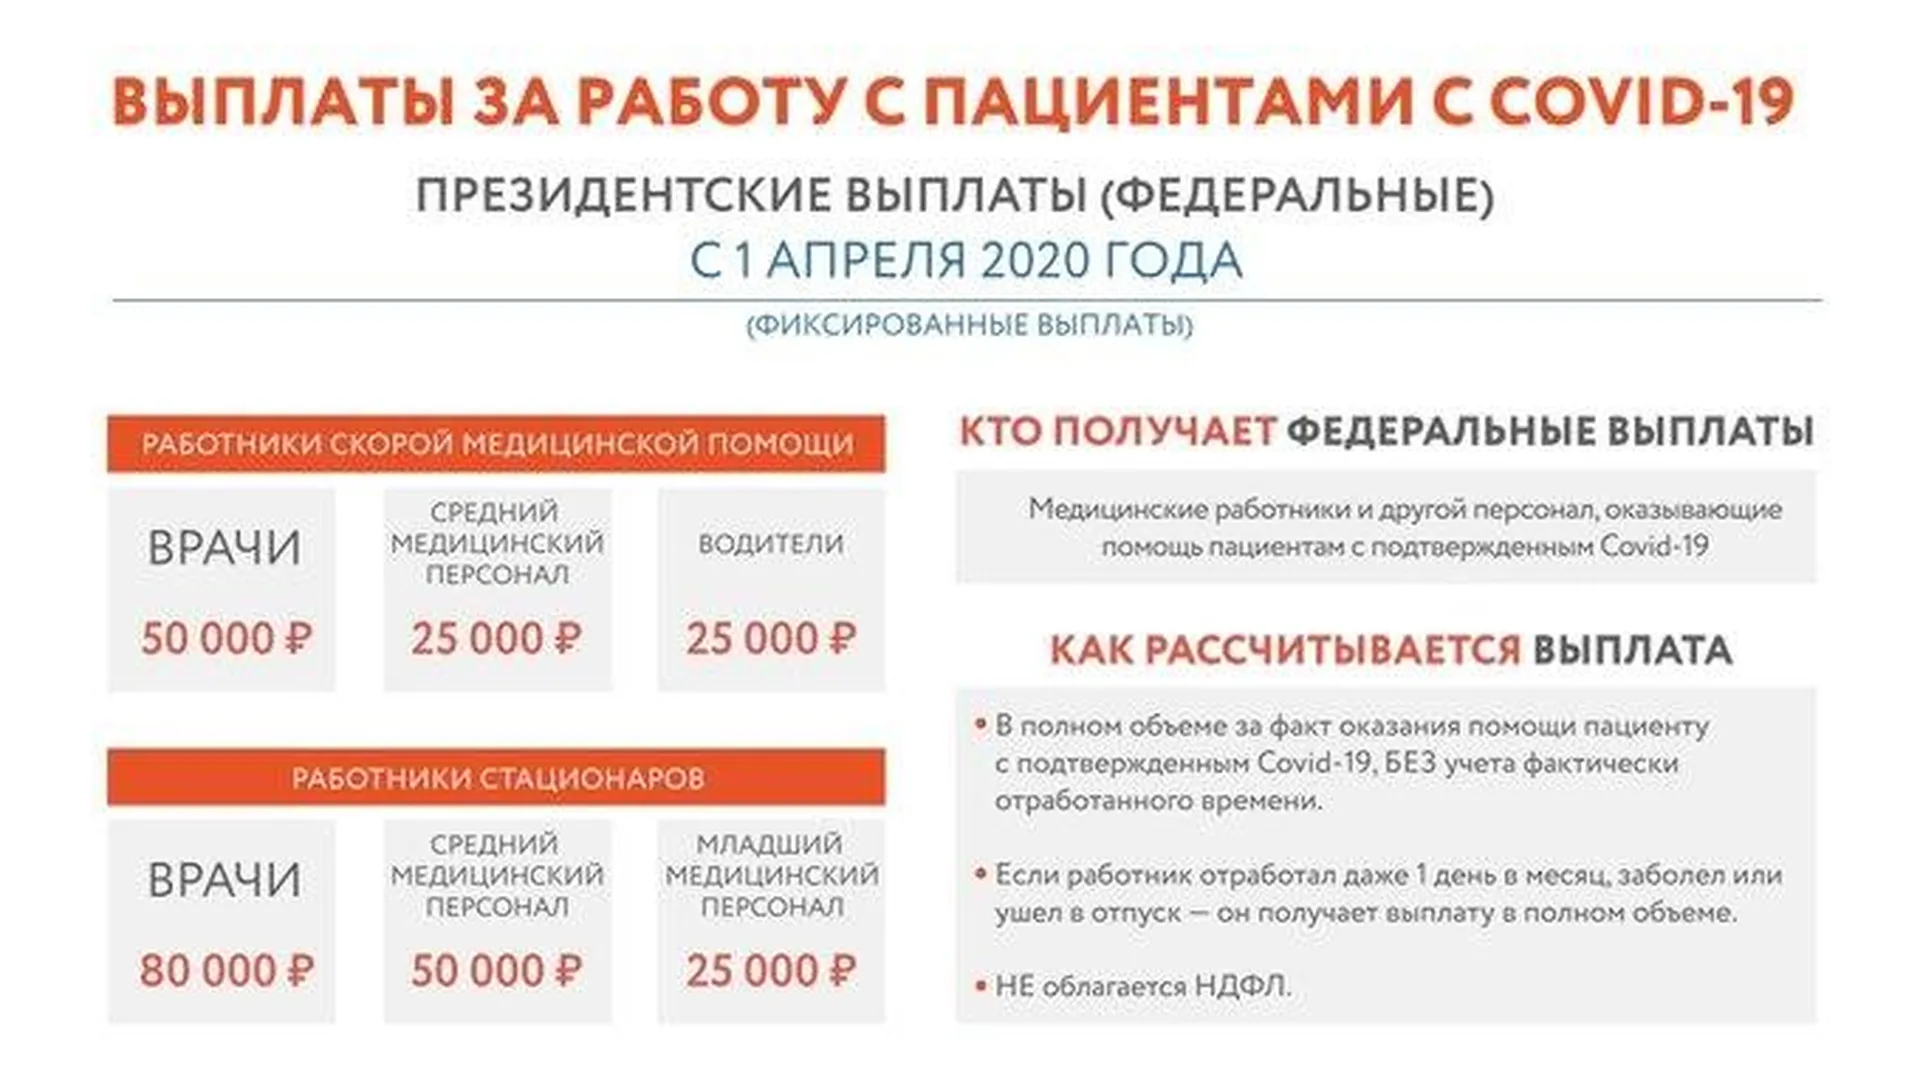 Пресс-служба губернатора и правительства Подмосковья